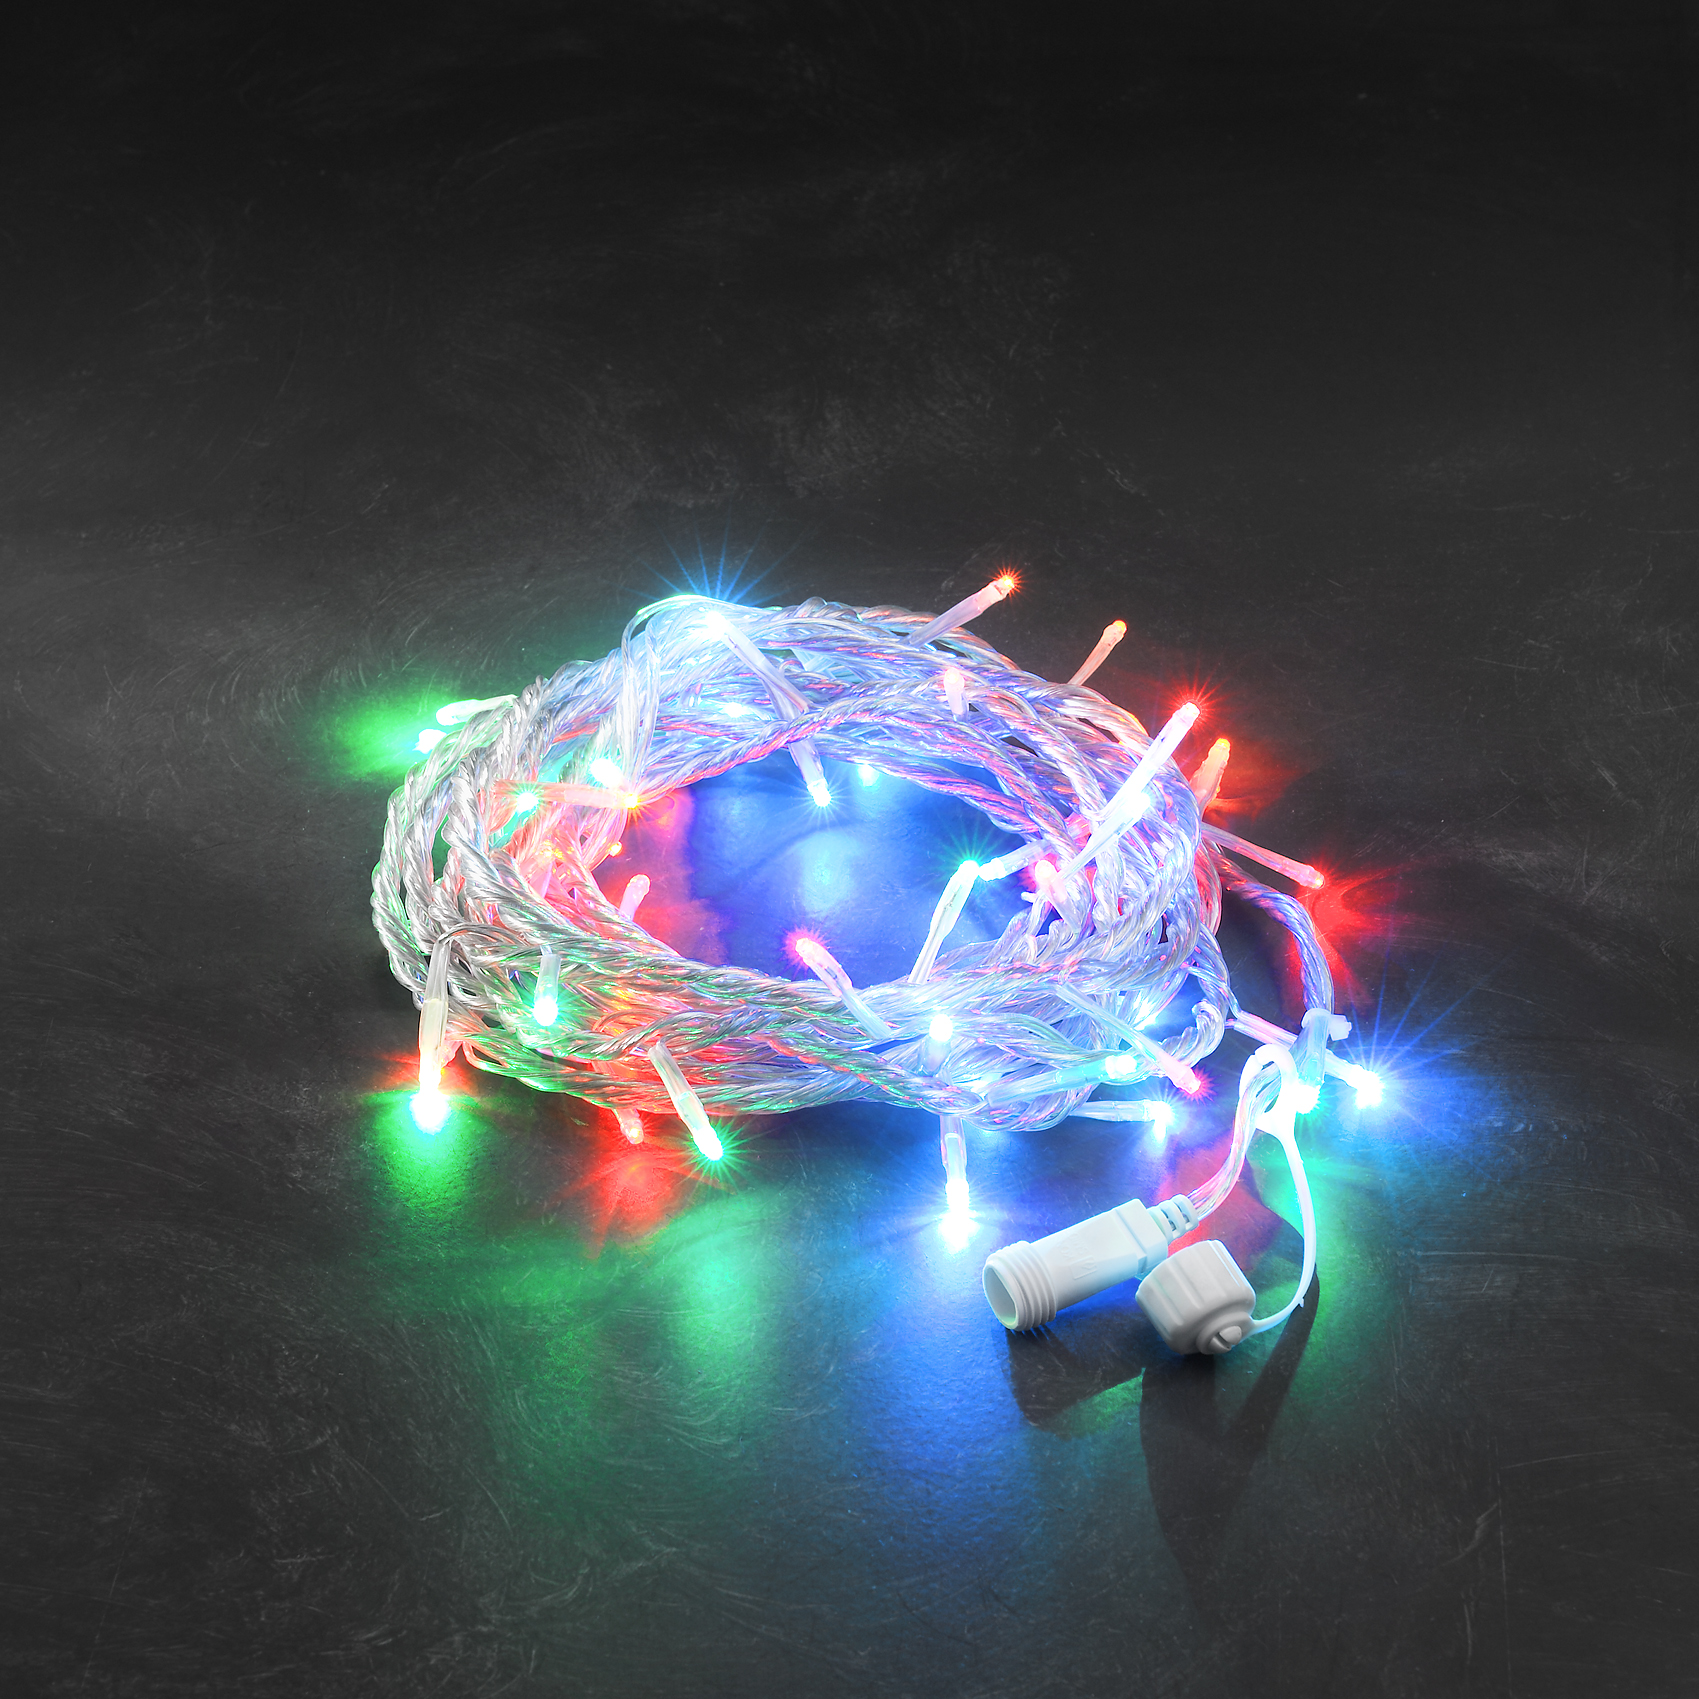 LED System 24V - Multi-Coloured Chain of Light, 50 LEDs